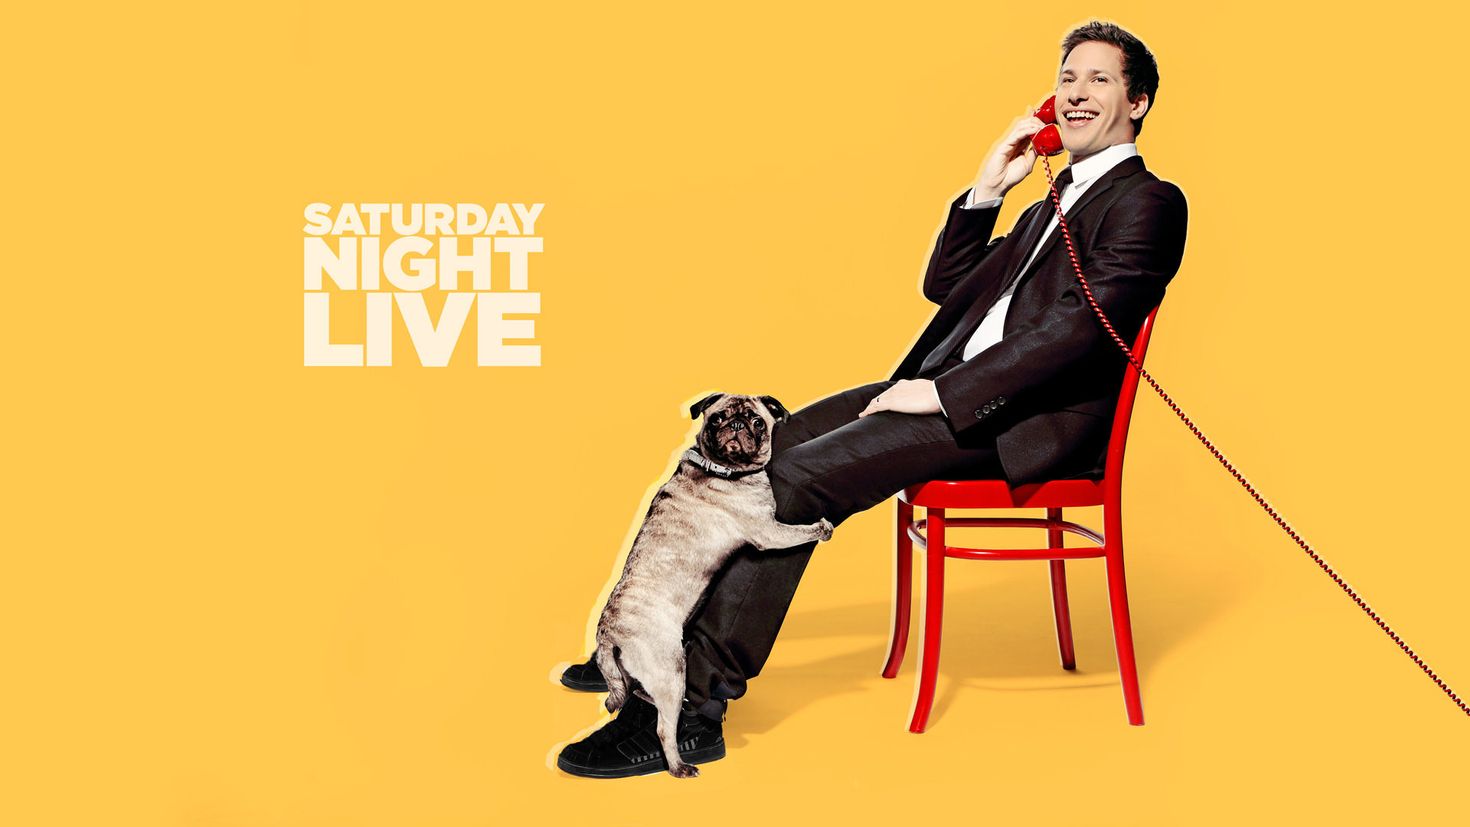 Субботним вечером в прямом. Saturday Night Live. Andy Samberg Saturday Night Live. Saturday Night Live заставка. Субботним вечером в прямом эфире Энди сэмберг.